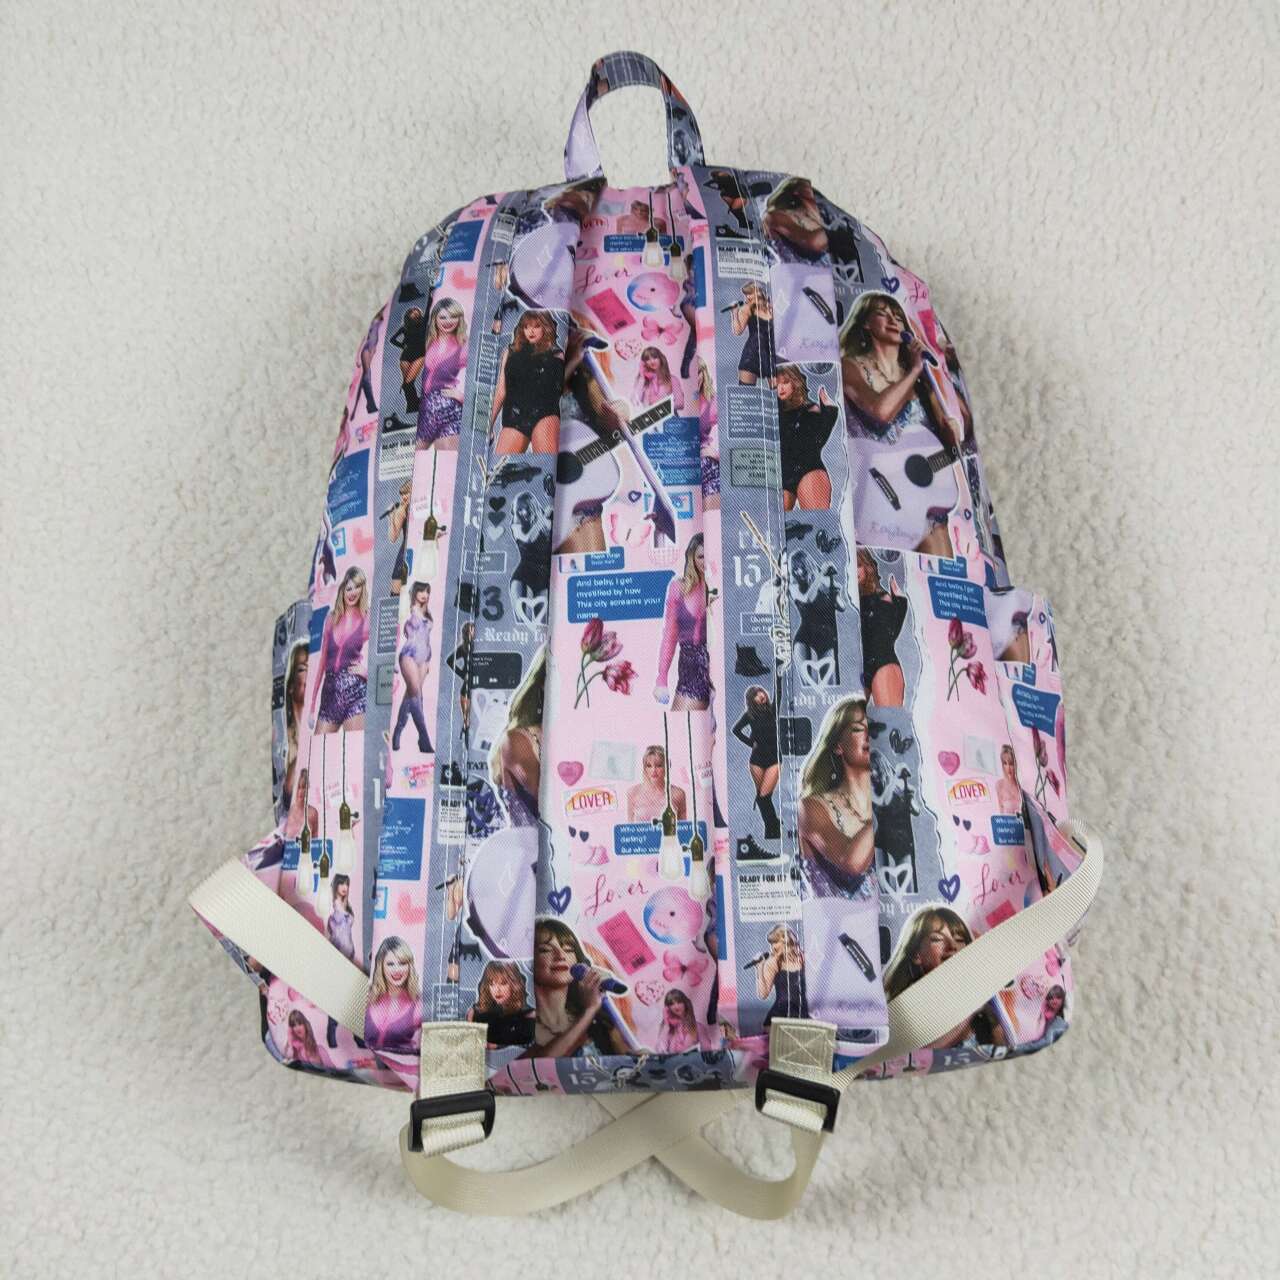 RTS NO MOQ BA0215 Taylor pink and gray backpack